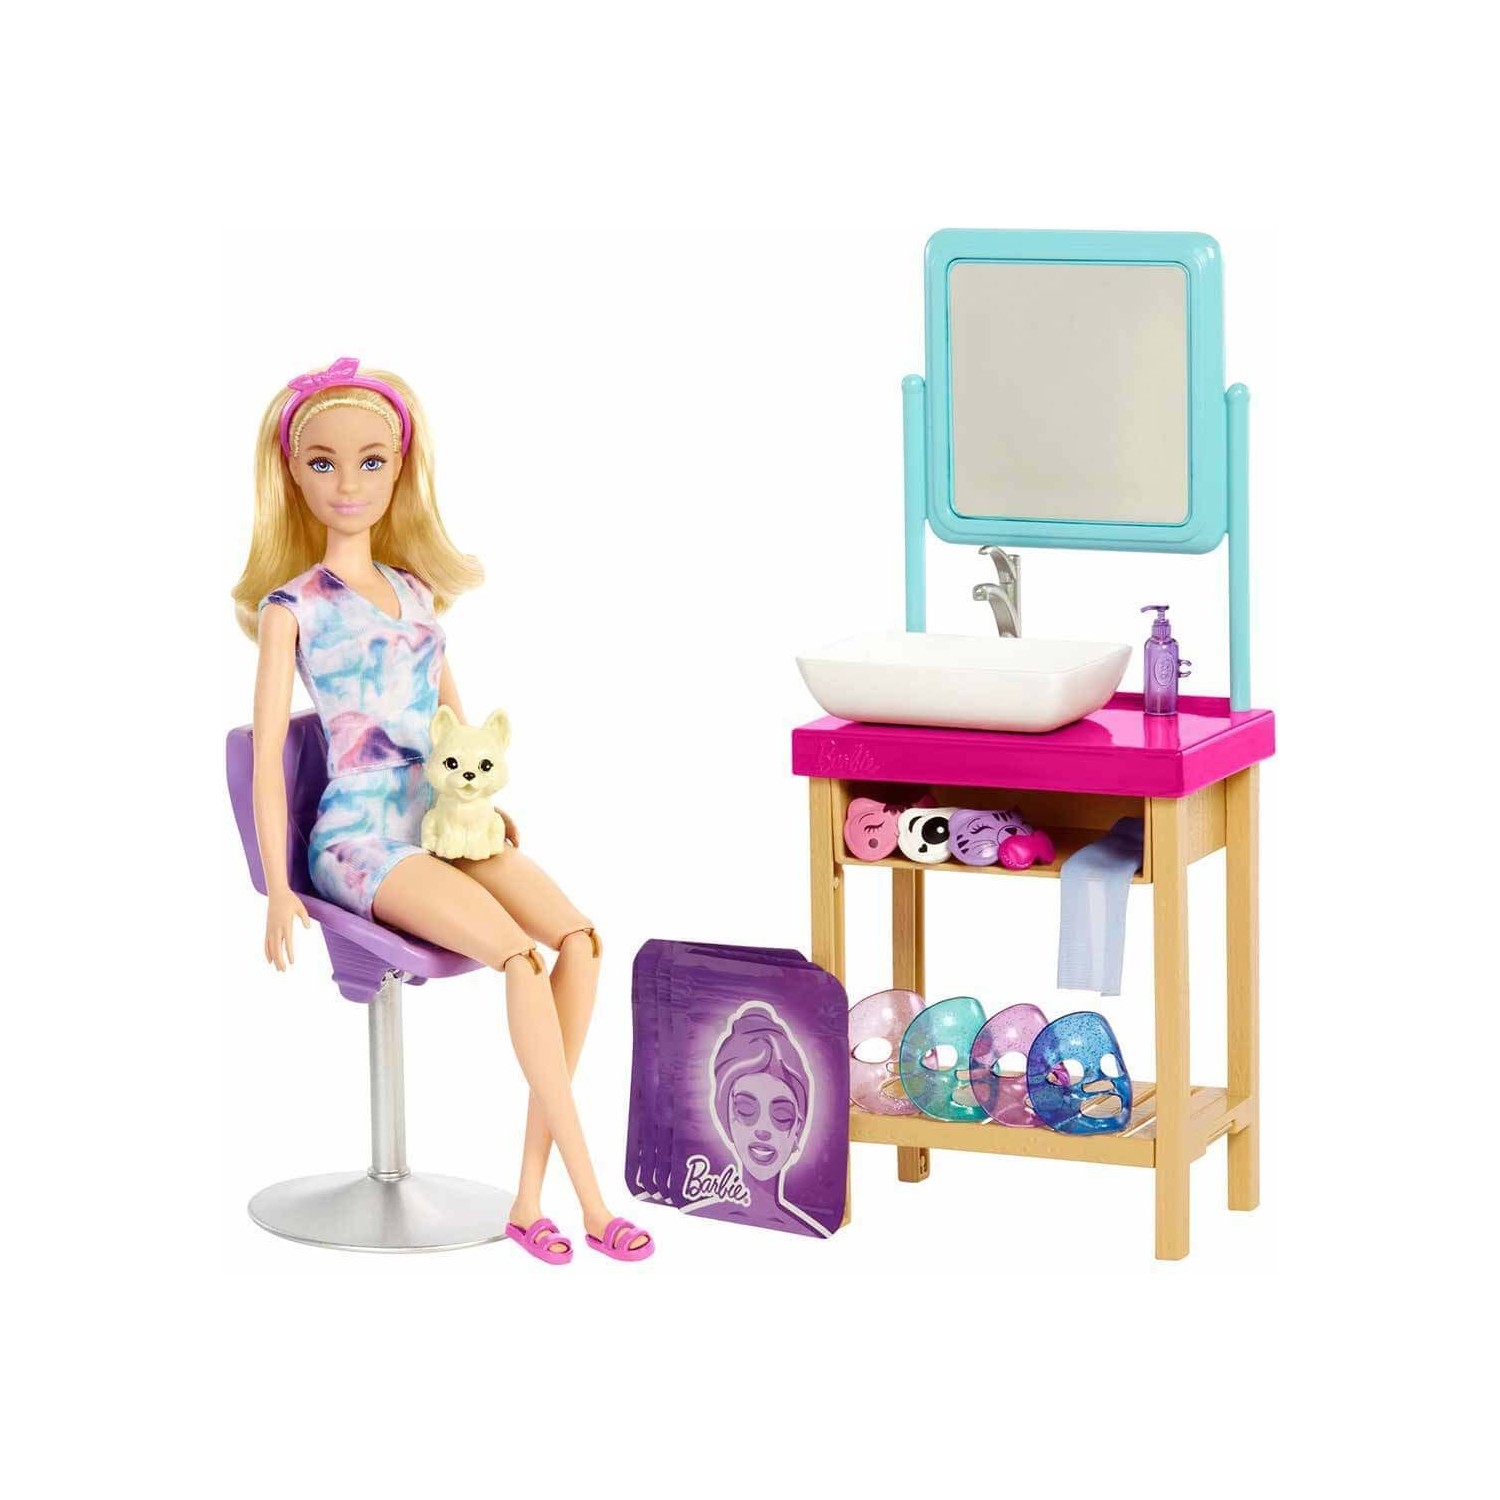 Игровой набор Barbie Sparkle Spa Day HCM82 игровой набор barbie с рабочим столом